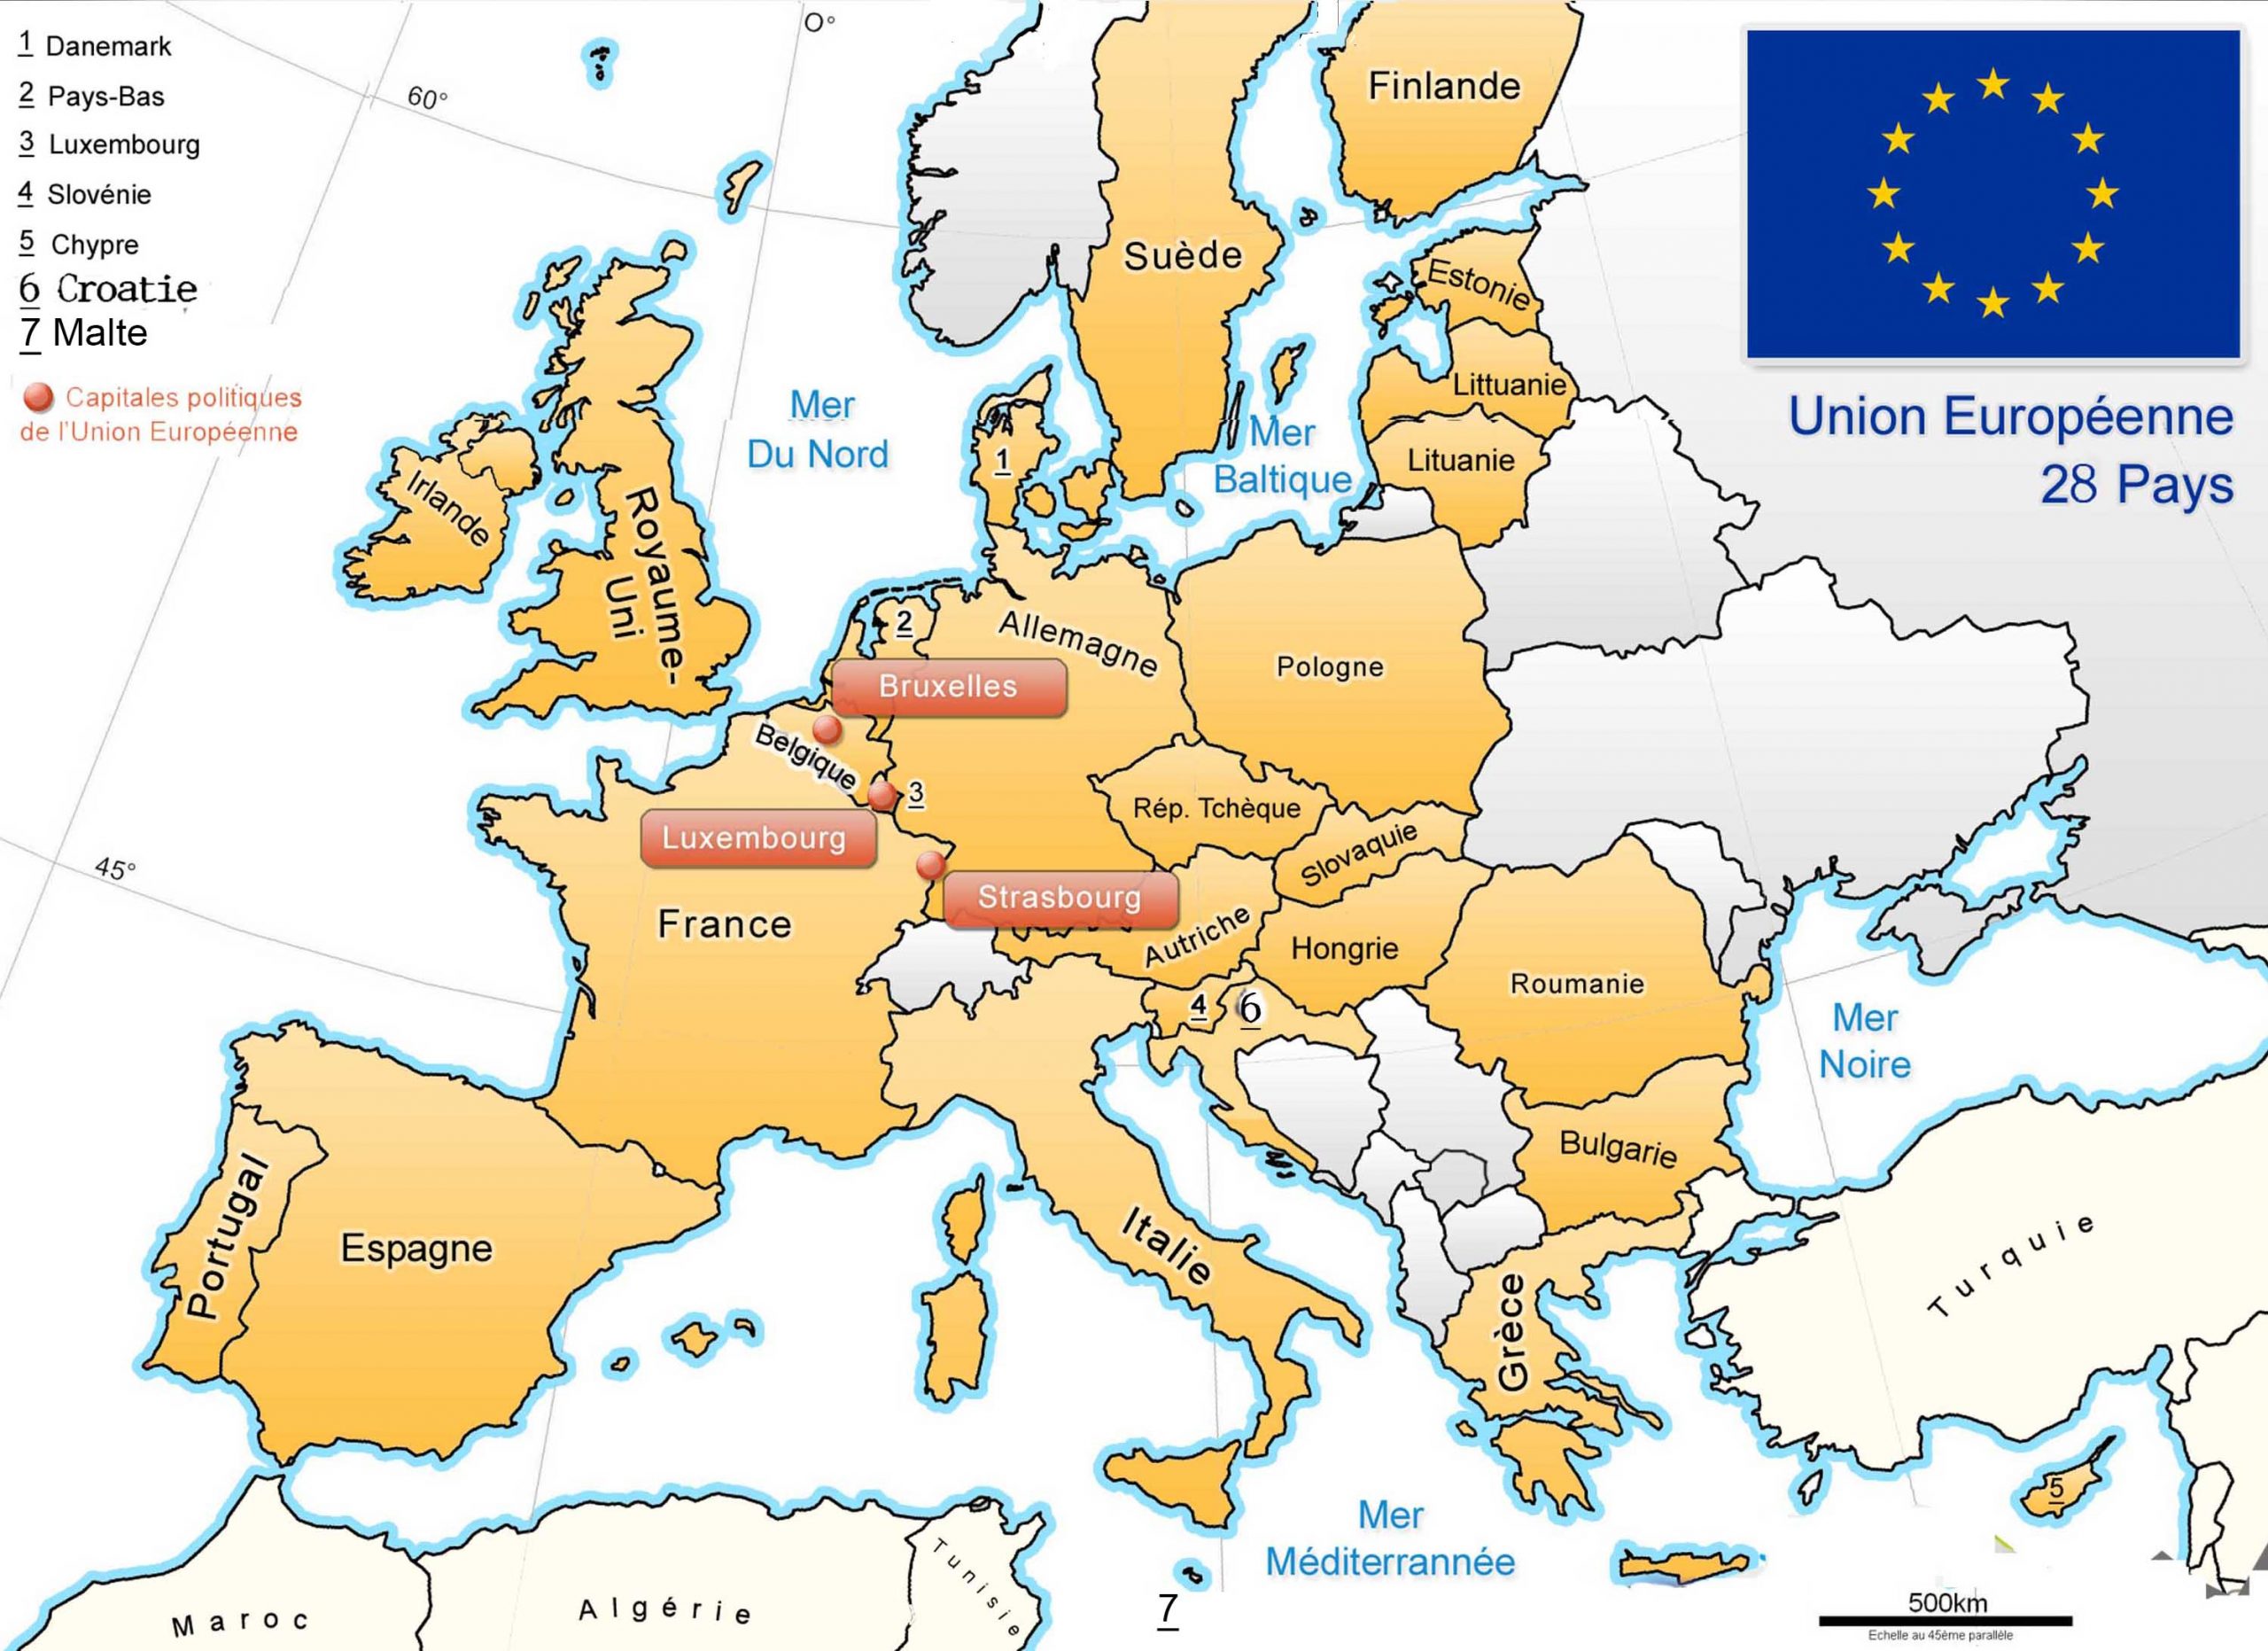 Apprendre À Placer Les Pays De L' Union Européenne - Le Blog dedans Carte D Europe Avec Les Capitales